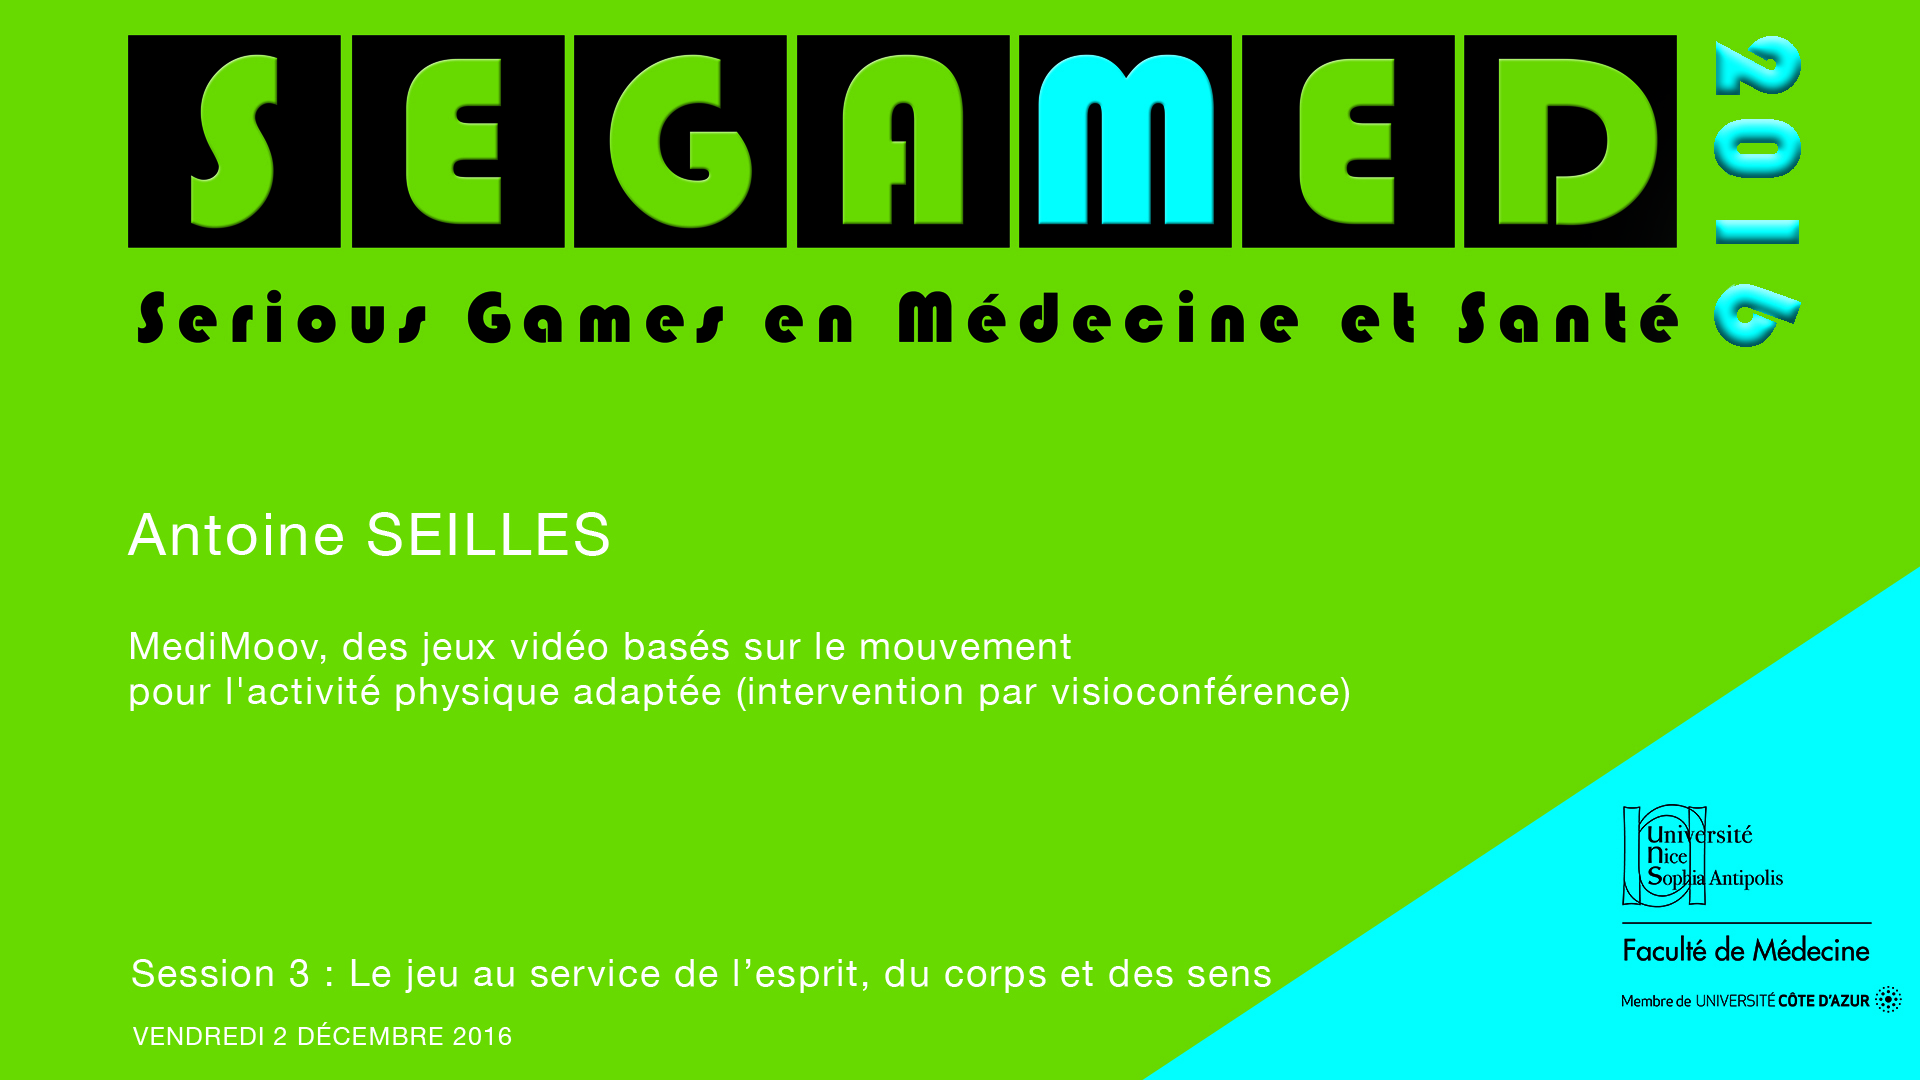 SEGAMED 2016 - MediMoov, des jeux vidéo basés sur le mouvement pour l'activité physique adaptée